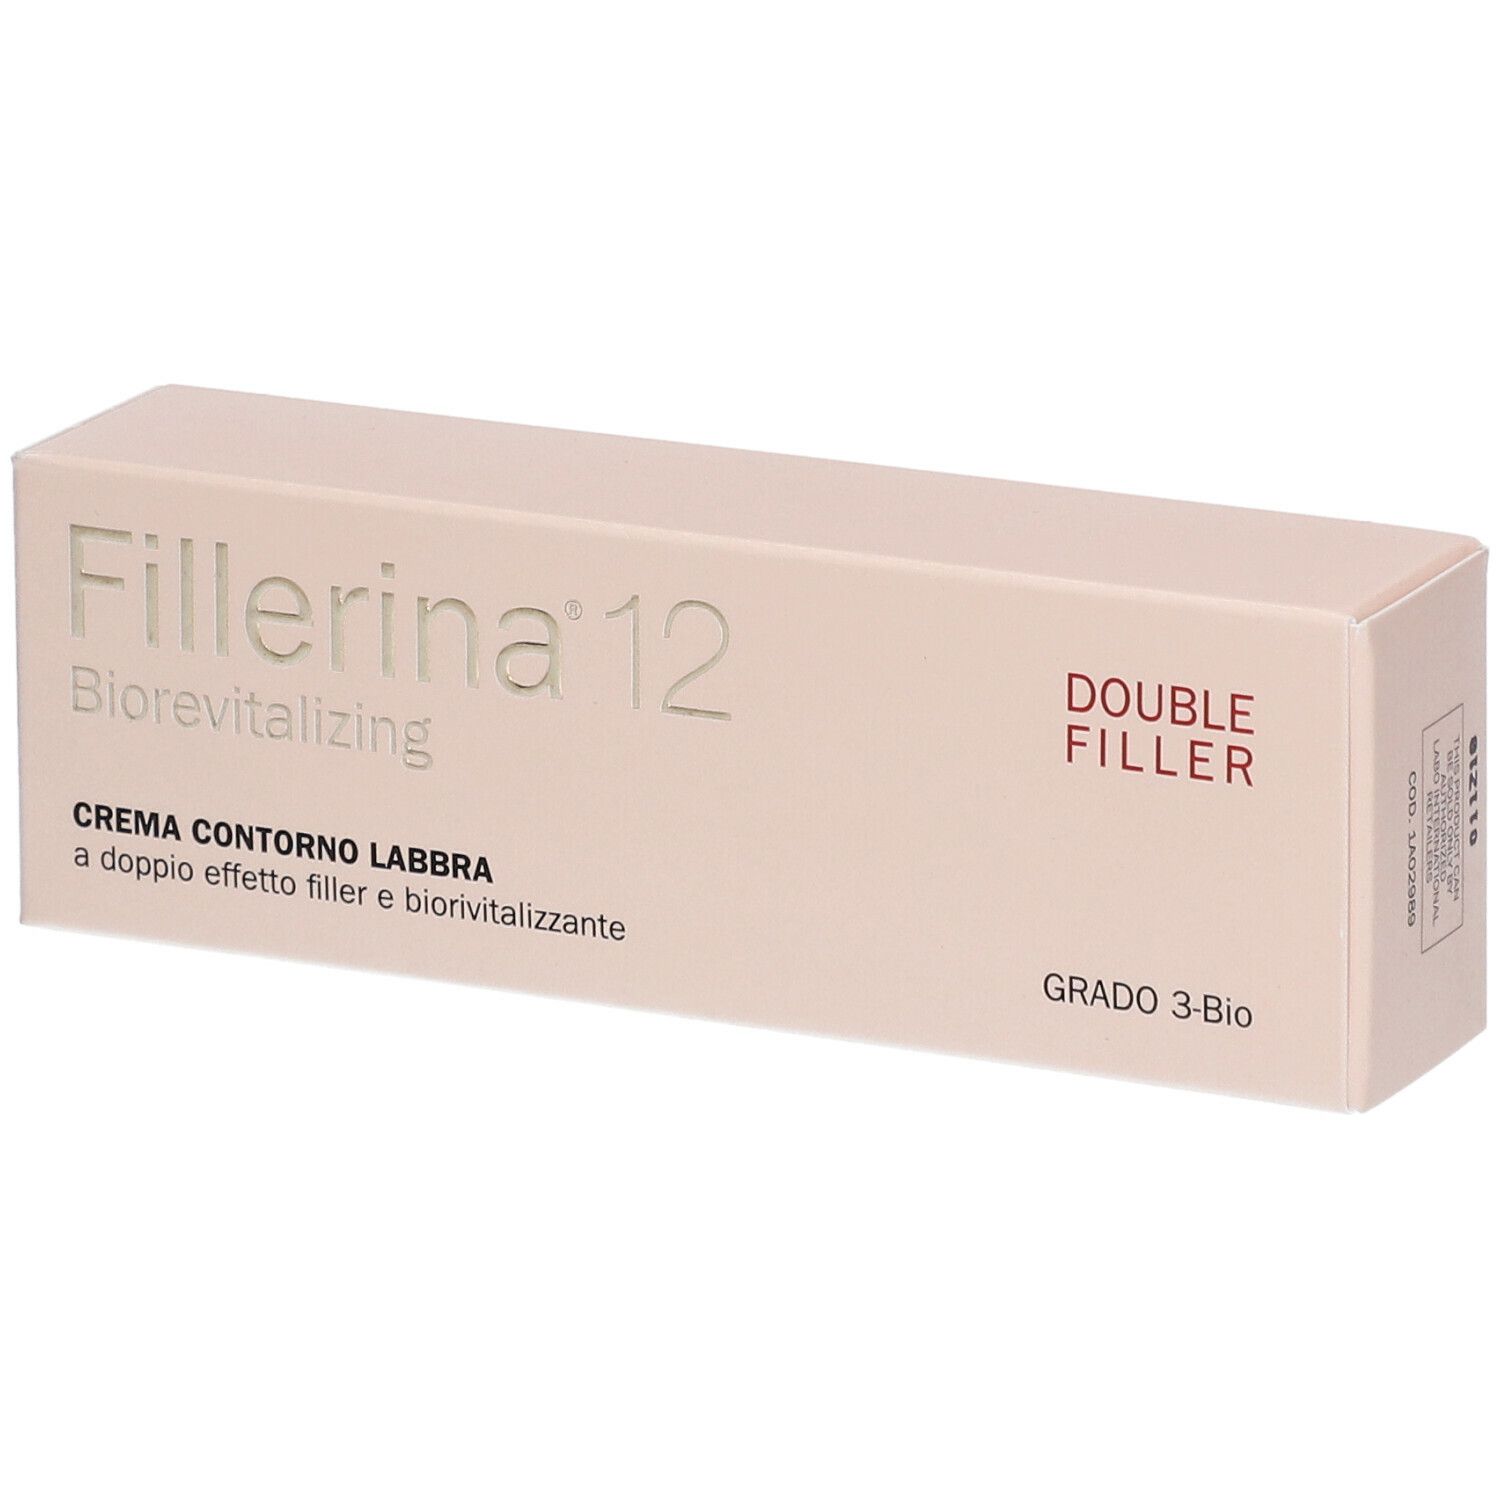 Fillerina® 12 Double Filler Biorevitalizing Crema Contorno Labbra Grado 3